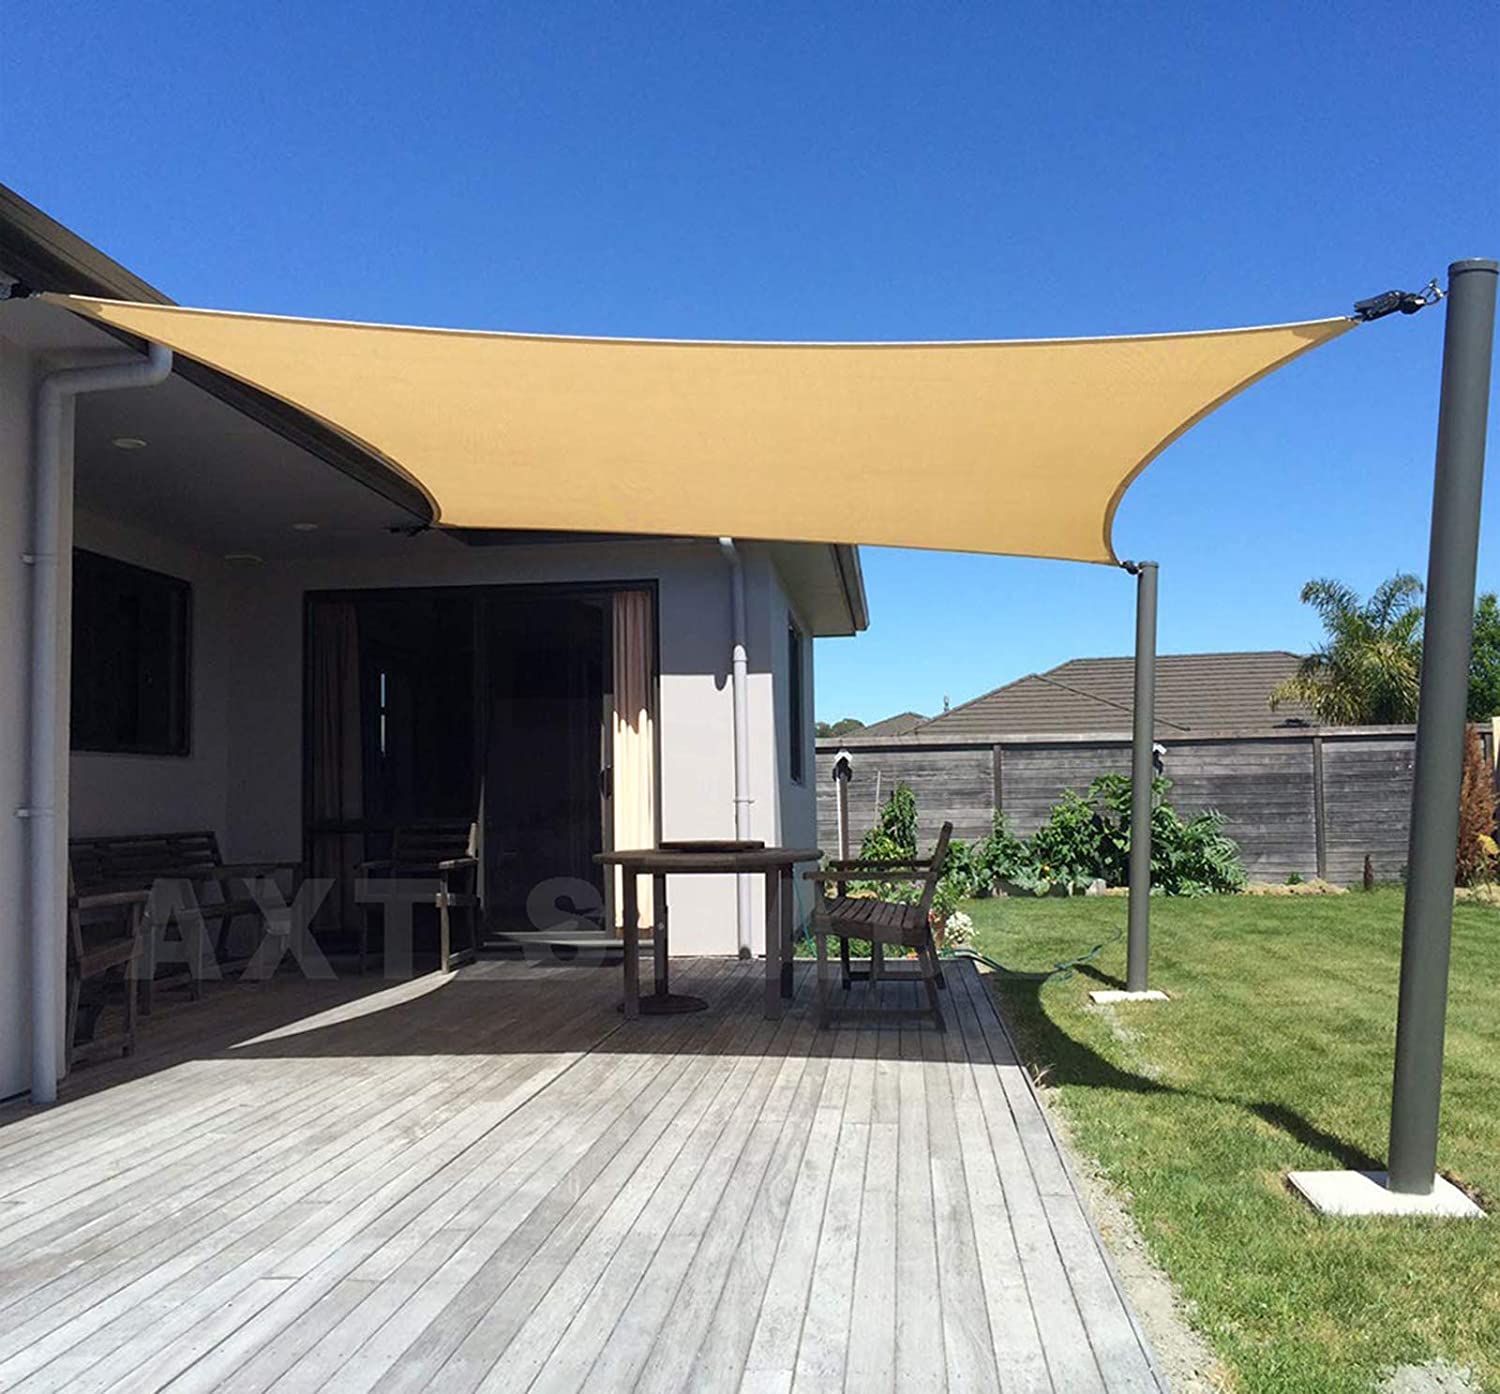 Store voile d'ombrage rectangulaire AXT SHADE 2,5 x 3 m, HDPE résistant aux UV et respirant pour terrasse, extérieur, jardin, couleur sable